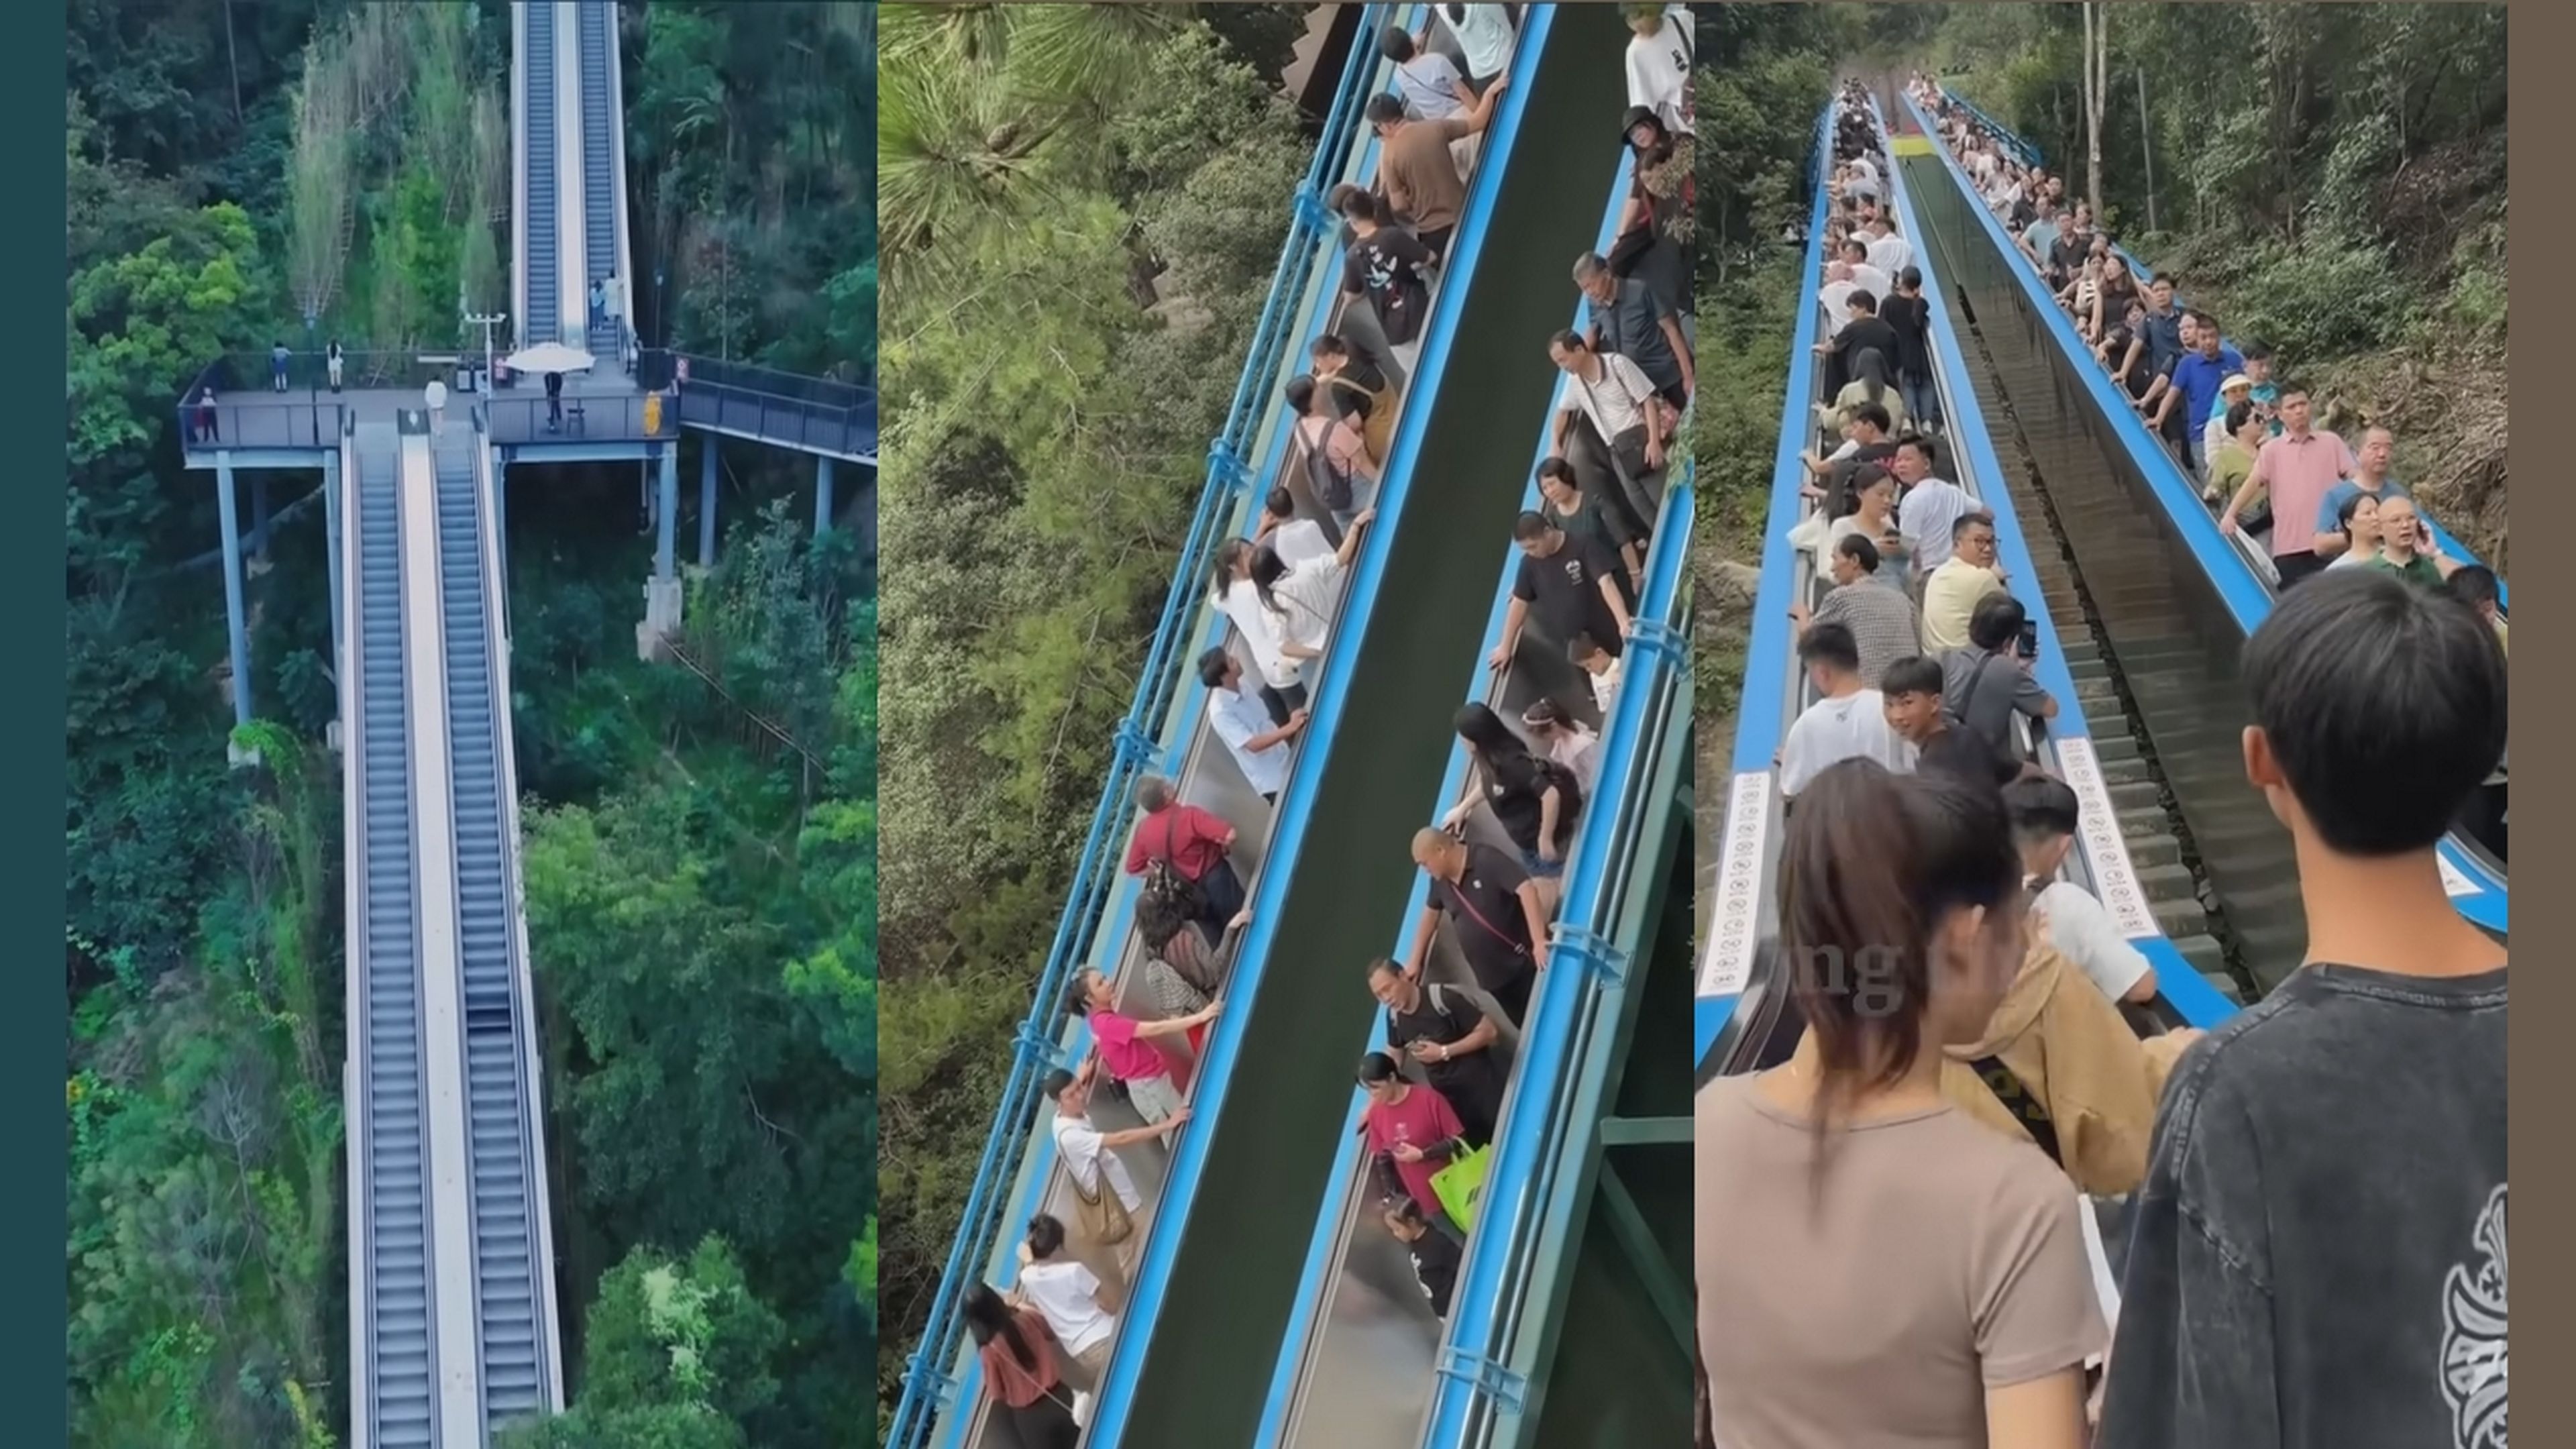 China la lía al poner una escalera automática de 350 metros para subir una montaña